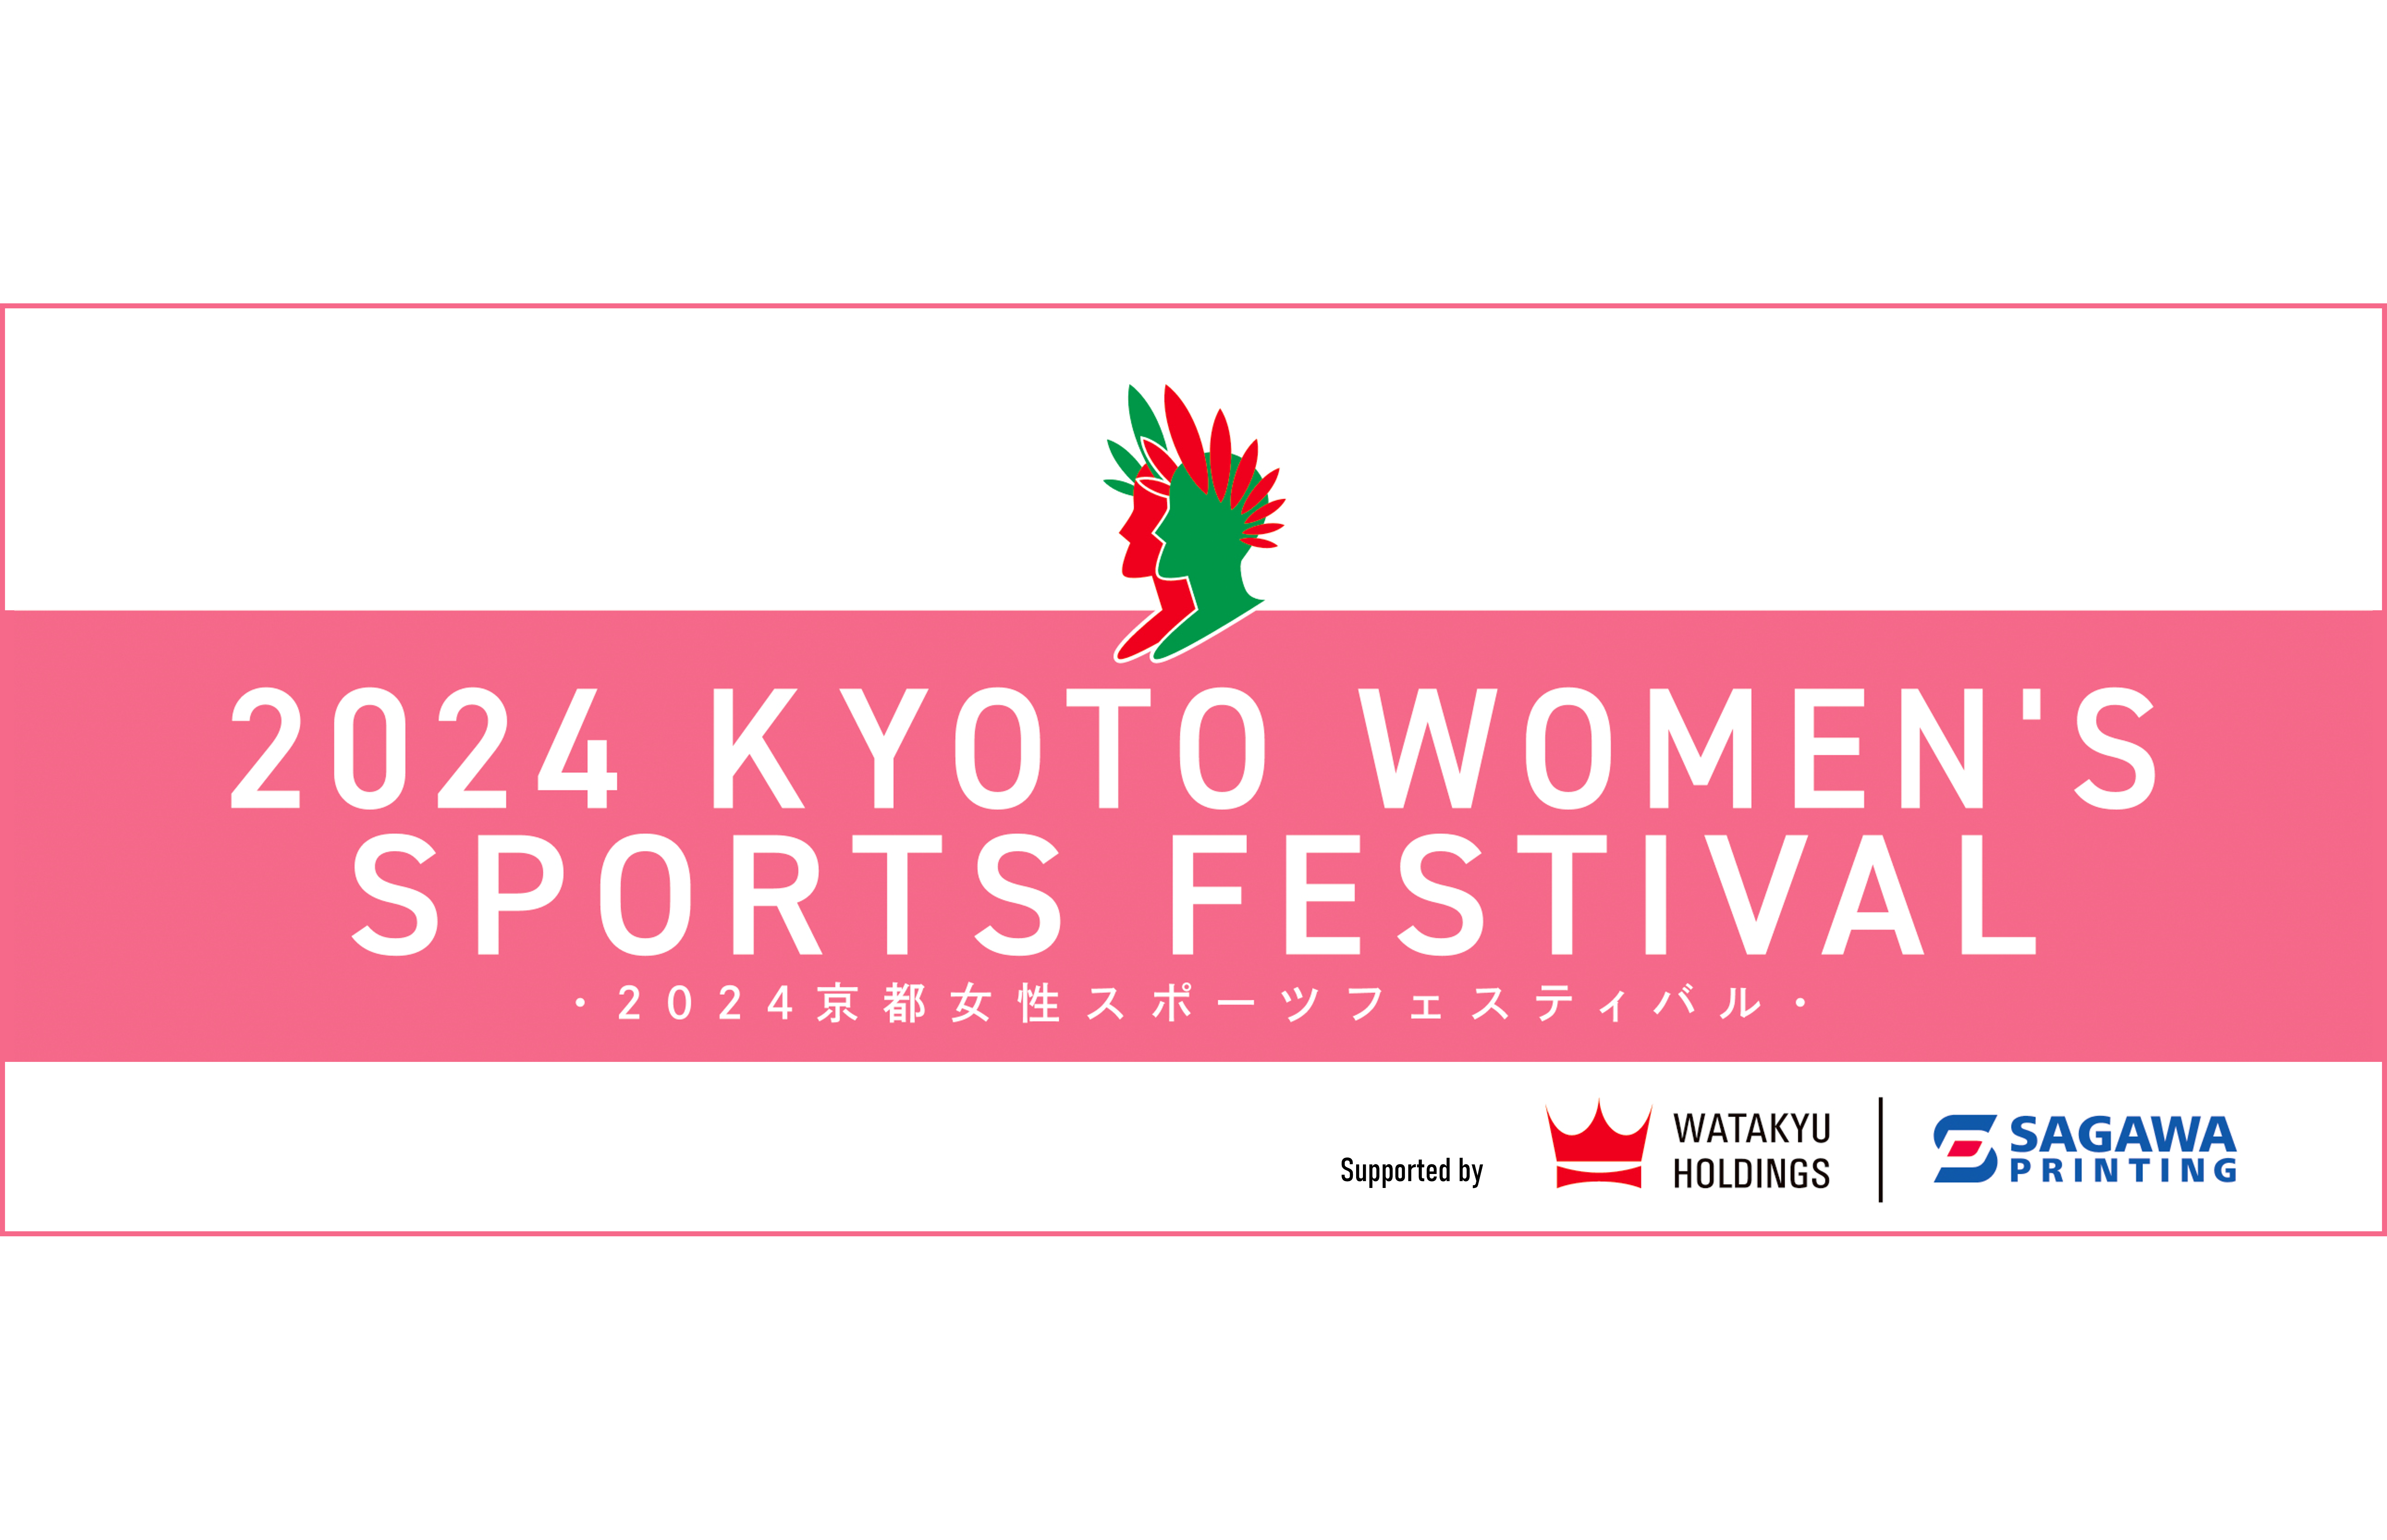 2024京都女性スポーツフェスティバル に協賛